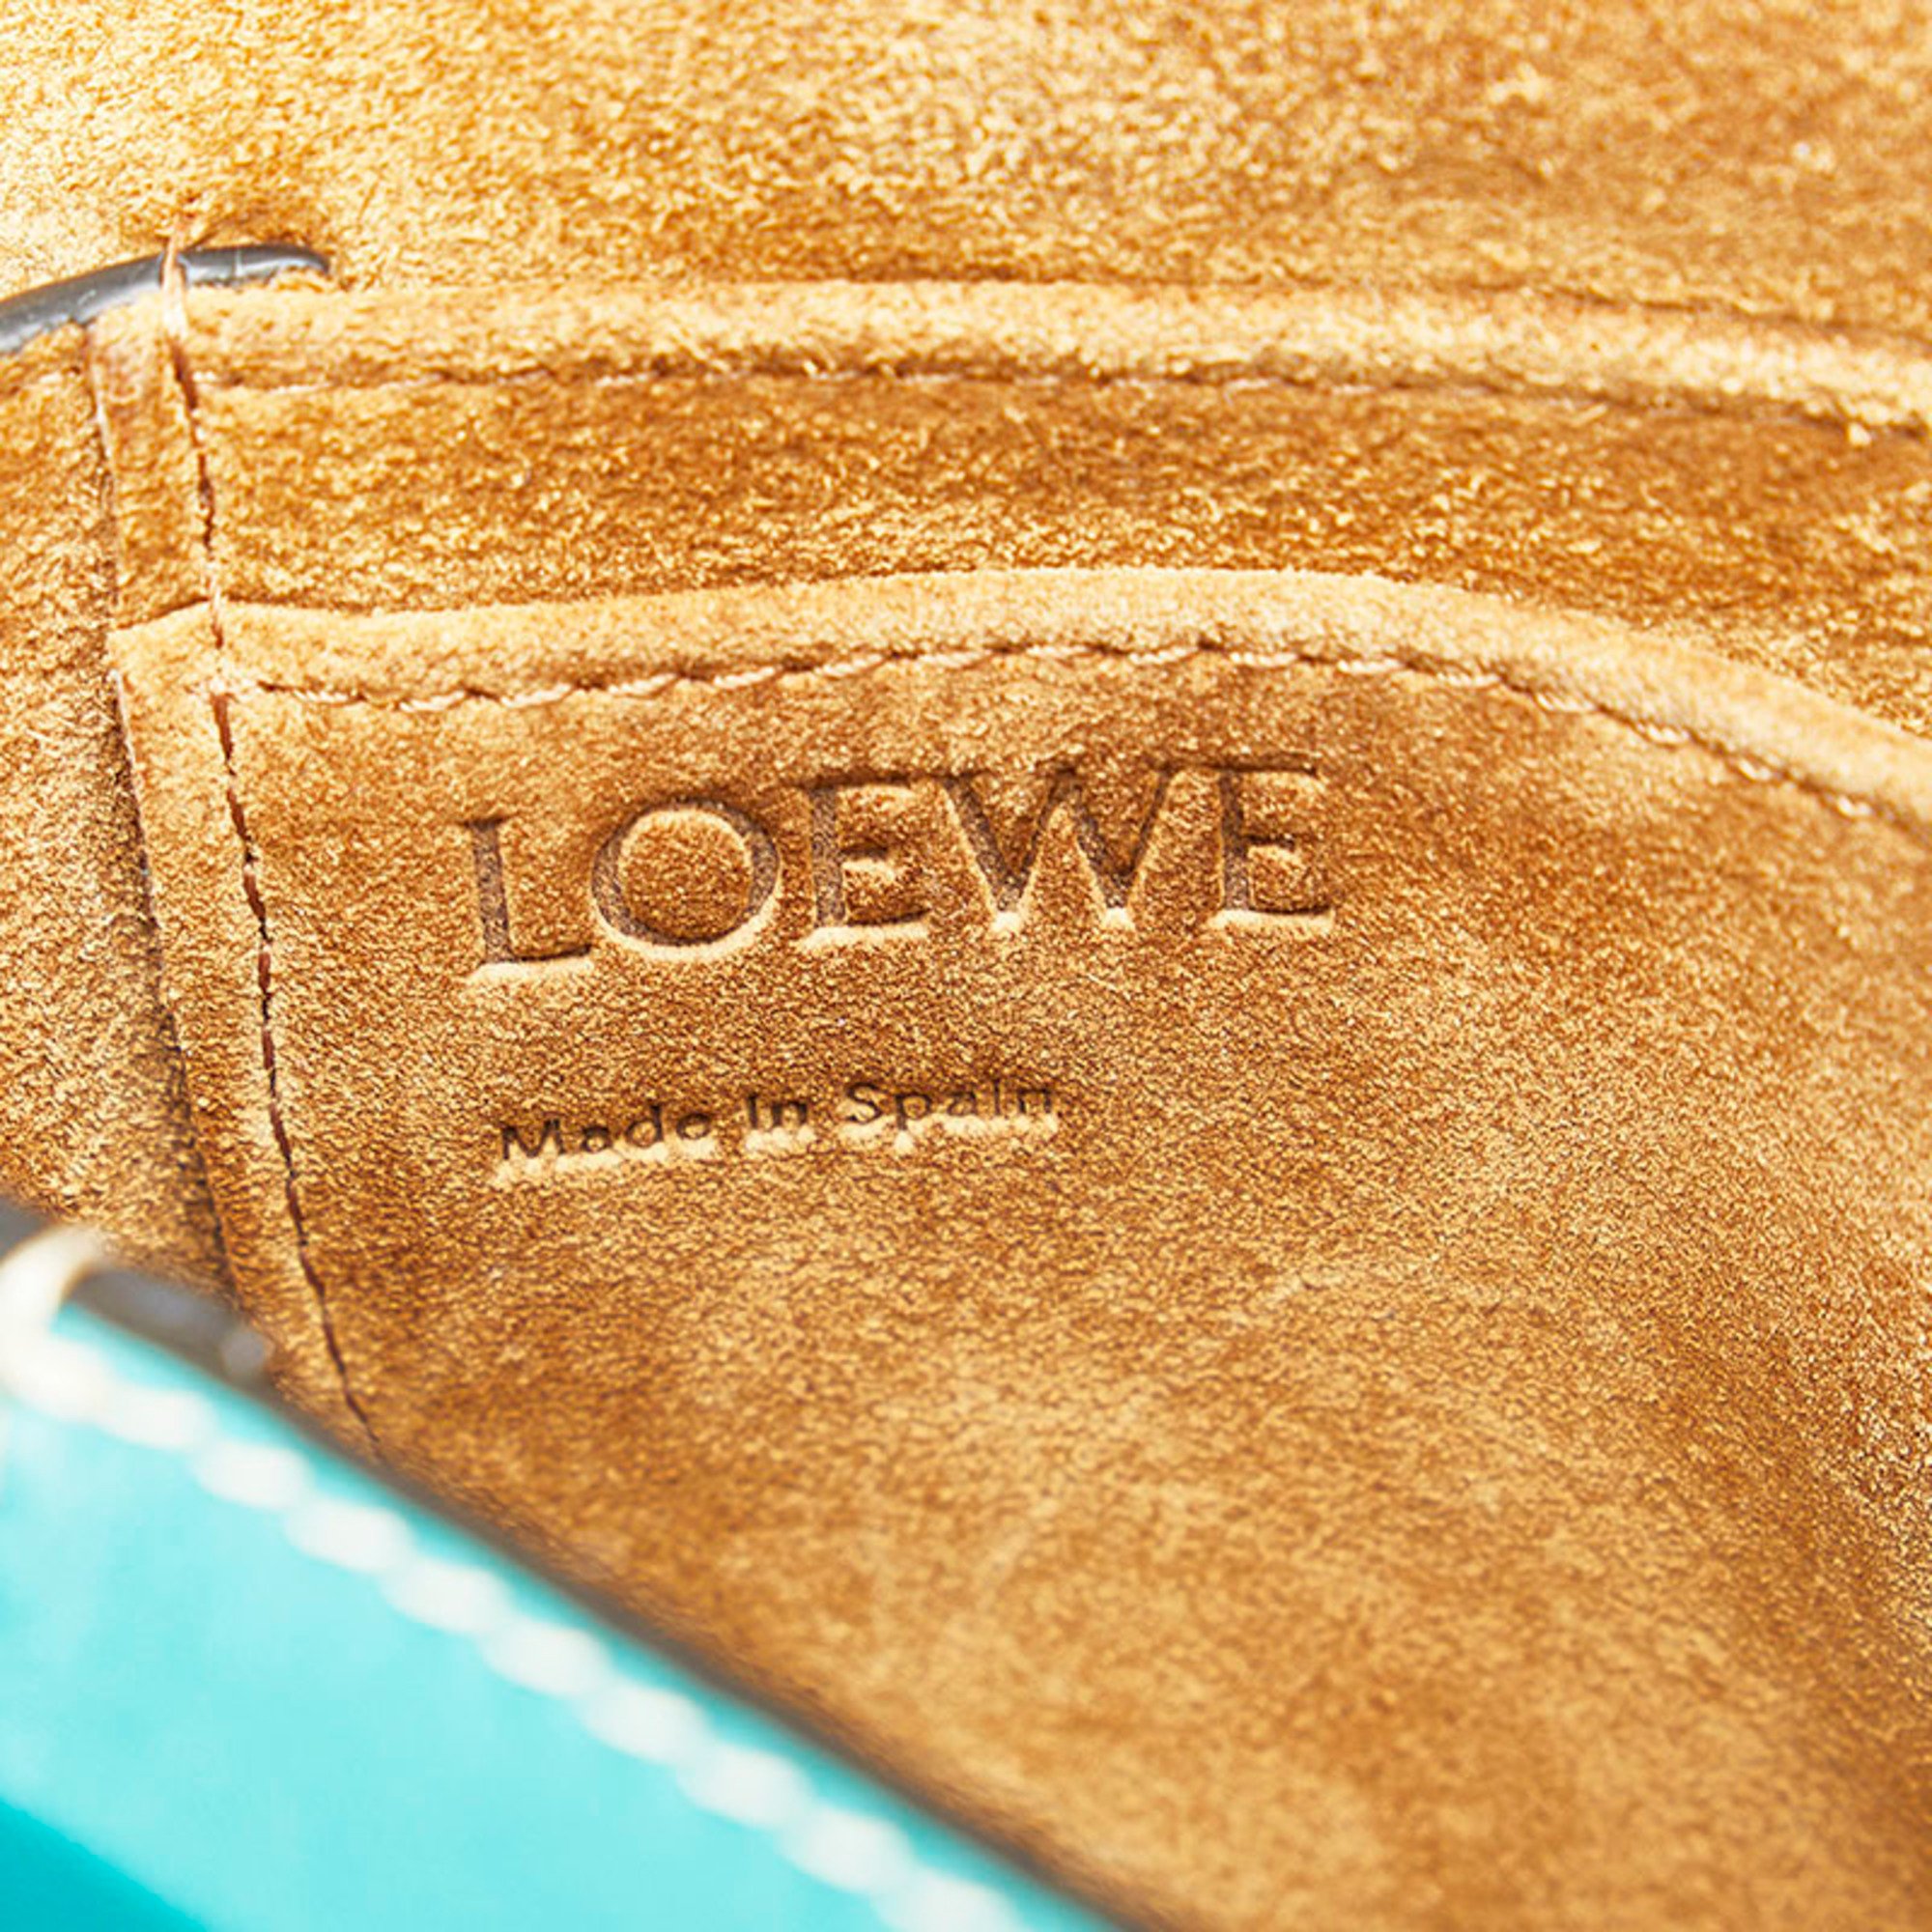 LOEWE Gate Dual Bag Shoulder Blue Green Leather Ladies